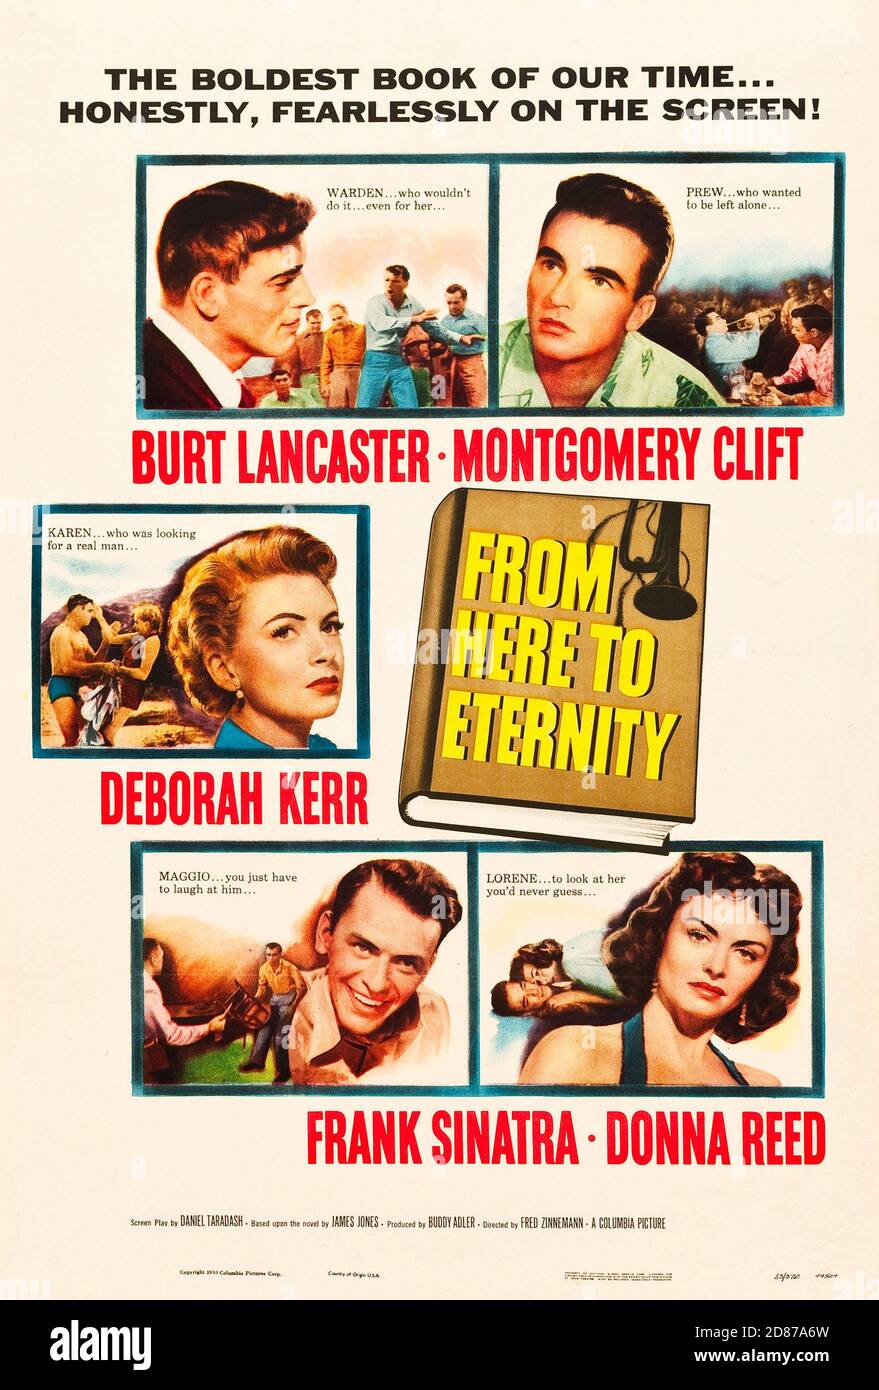 Affiche de film vintage, d'ici à Eternity avec Frank Sinatra, Burt Lancaster, Montgomery Clift et Deborah Kerr. 1953. Banque D'Images